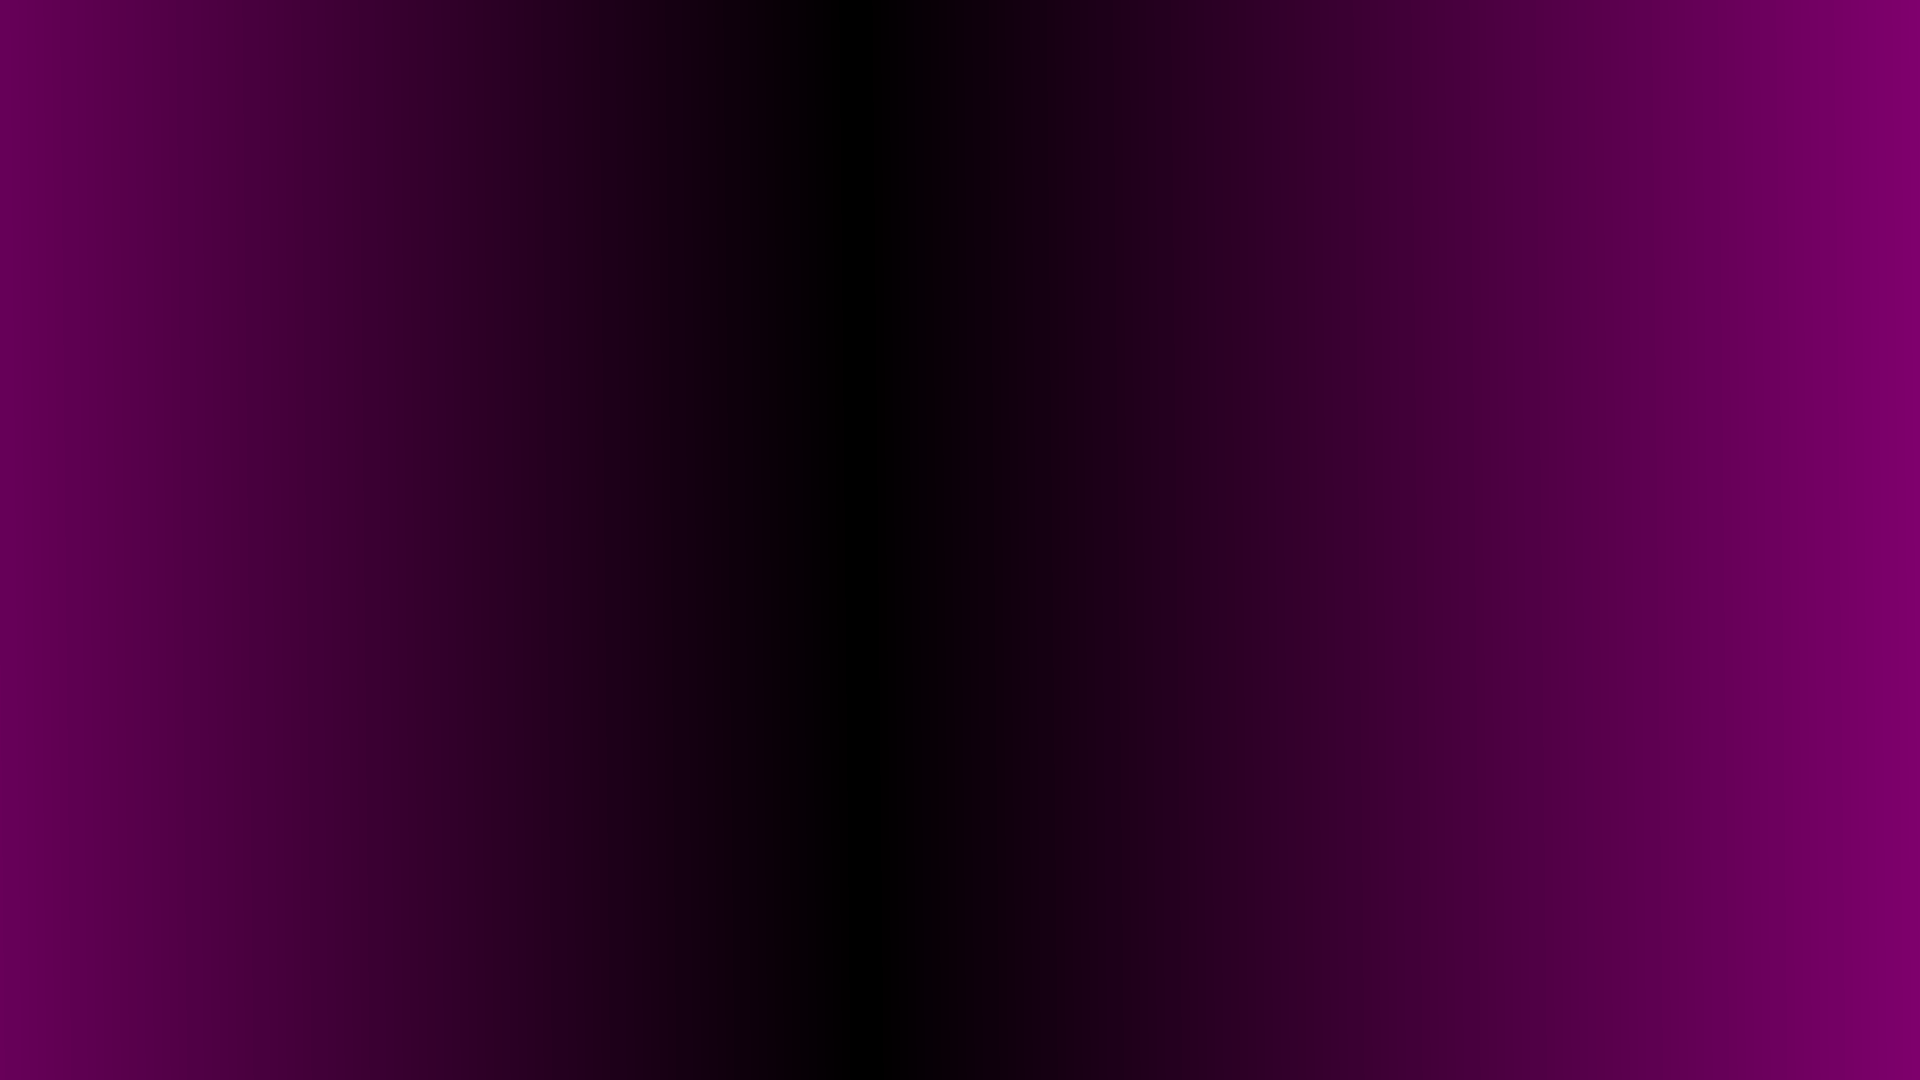 Đen Tím Gradient Nền - Nghệ thuật độc đáo của Black Purple Gradient Wallpaper sẽ đưa bạn đến một thế giới tốt đẹp hơn với sự hòa quyện tuyệt vời. Sự phân tầng tinh tế giữa màu đen và tím sẽ khiến bạn phải trầm trồ trước tạo hình này. Hãy ngắm nhìn hình nền tuyệt vời này ngay bây giờ!